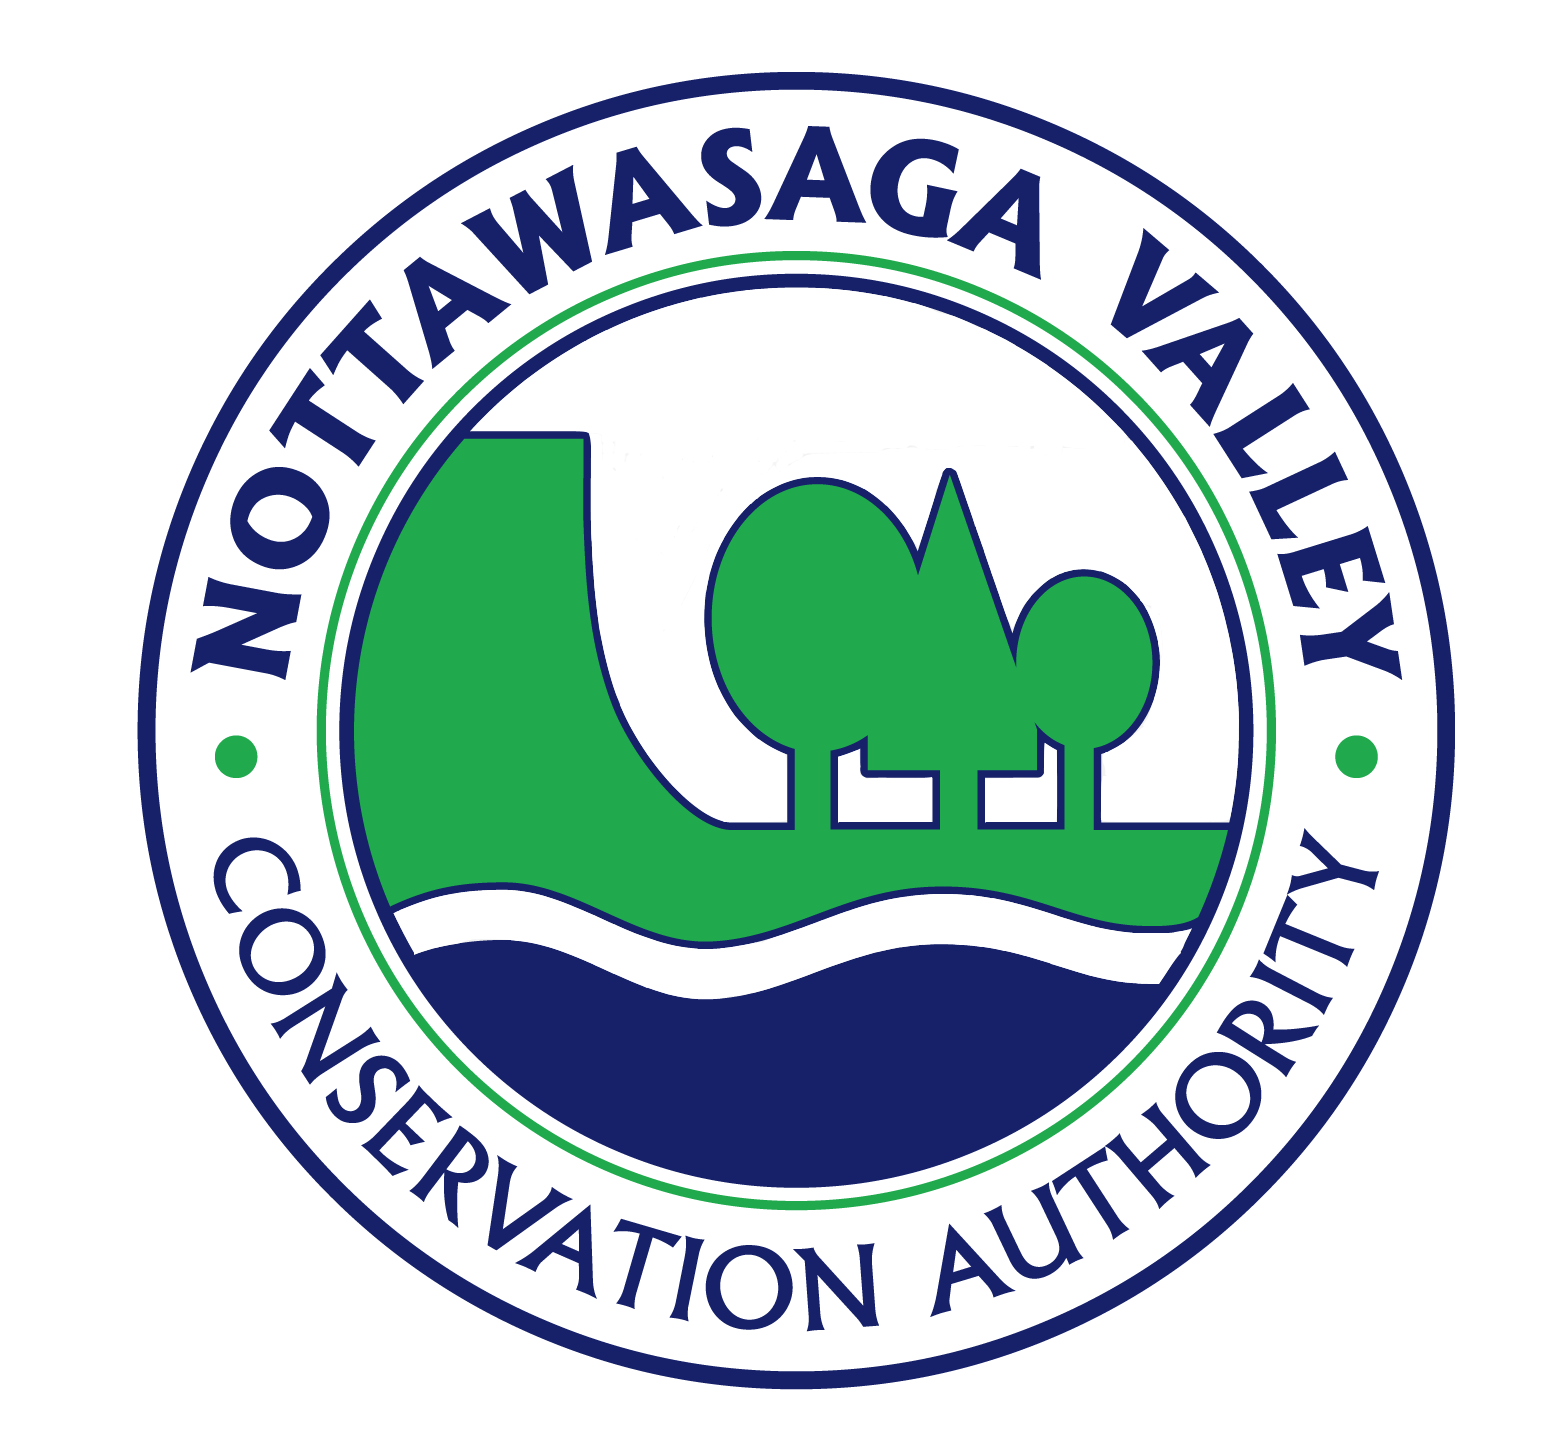 NVCA Logo